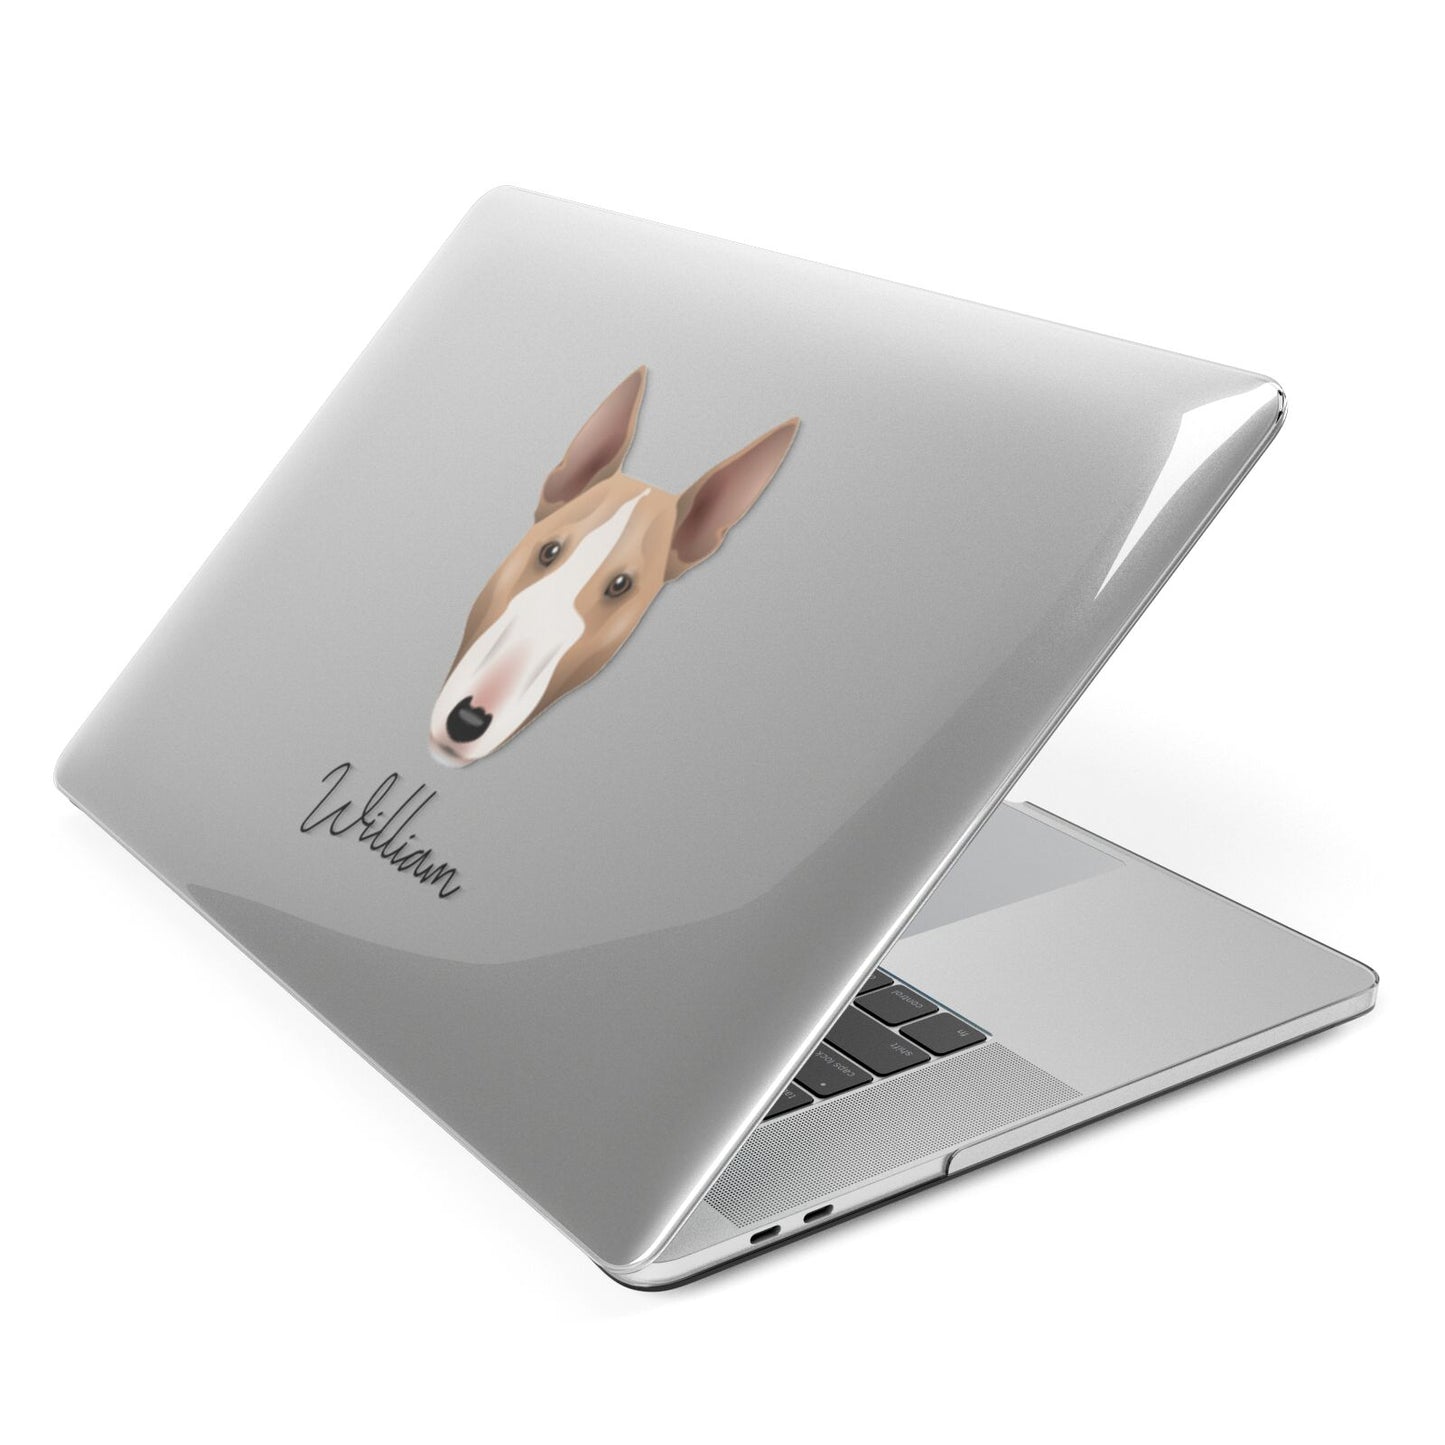 Miniature Bull Terrier Personalised Apple MacBook Case Side View